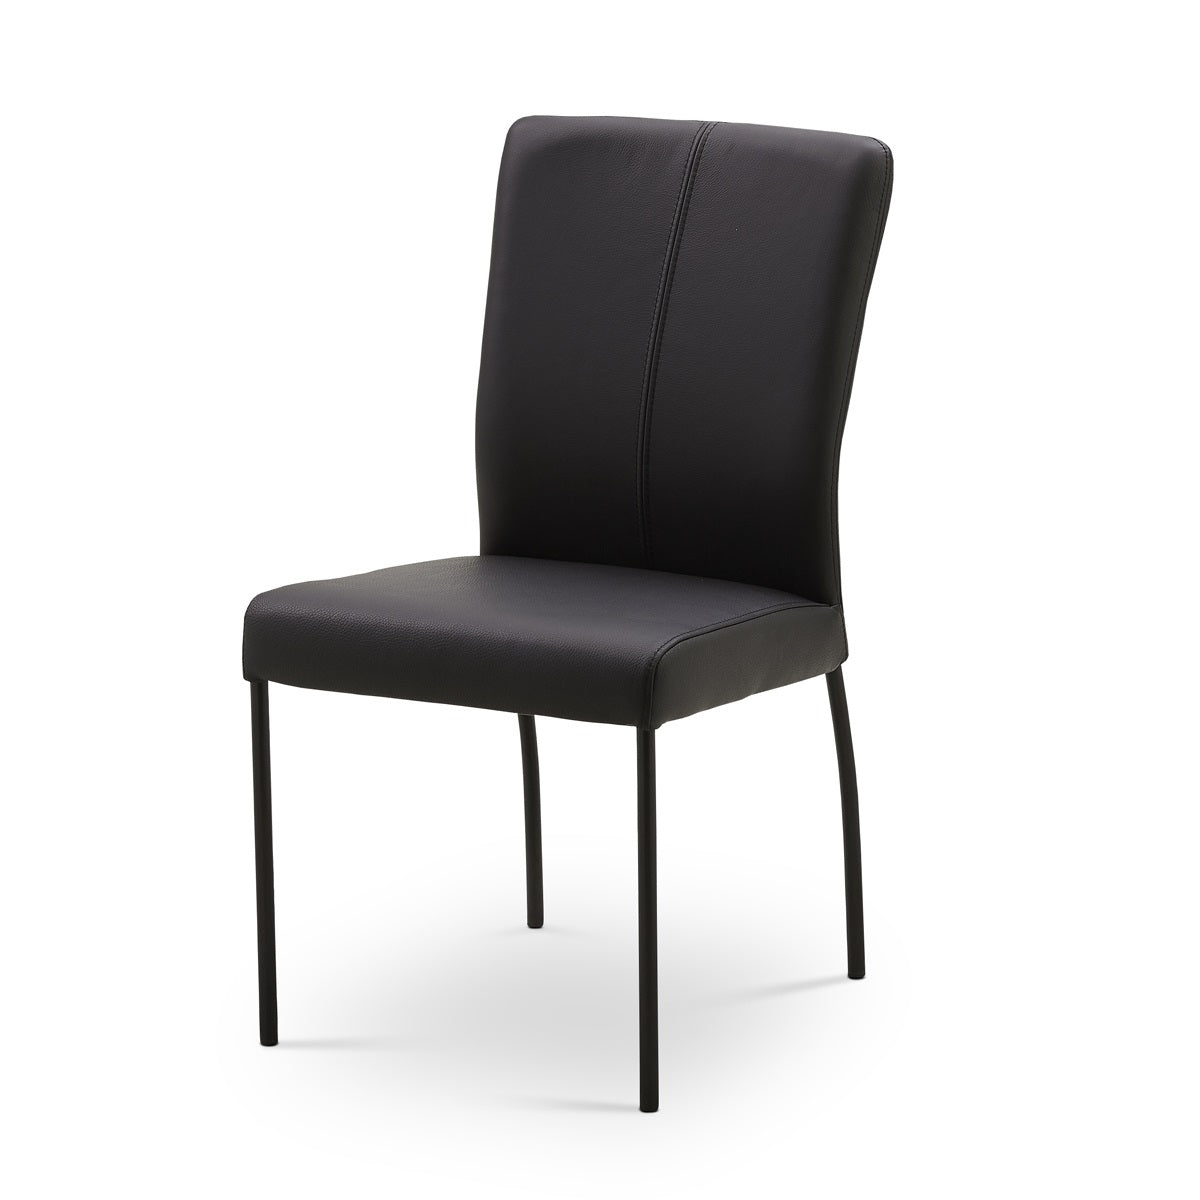 Ciro spisebordsstol fra Just Design monteret med Tauros okselæder i enten brun eller sort læder. Ben i metal.